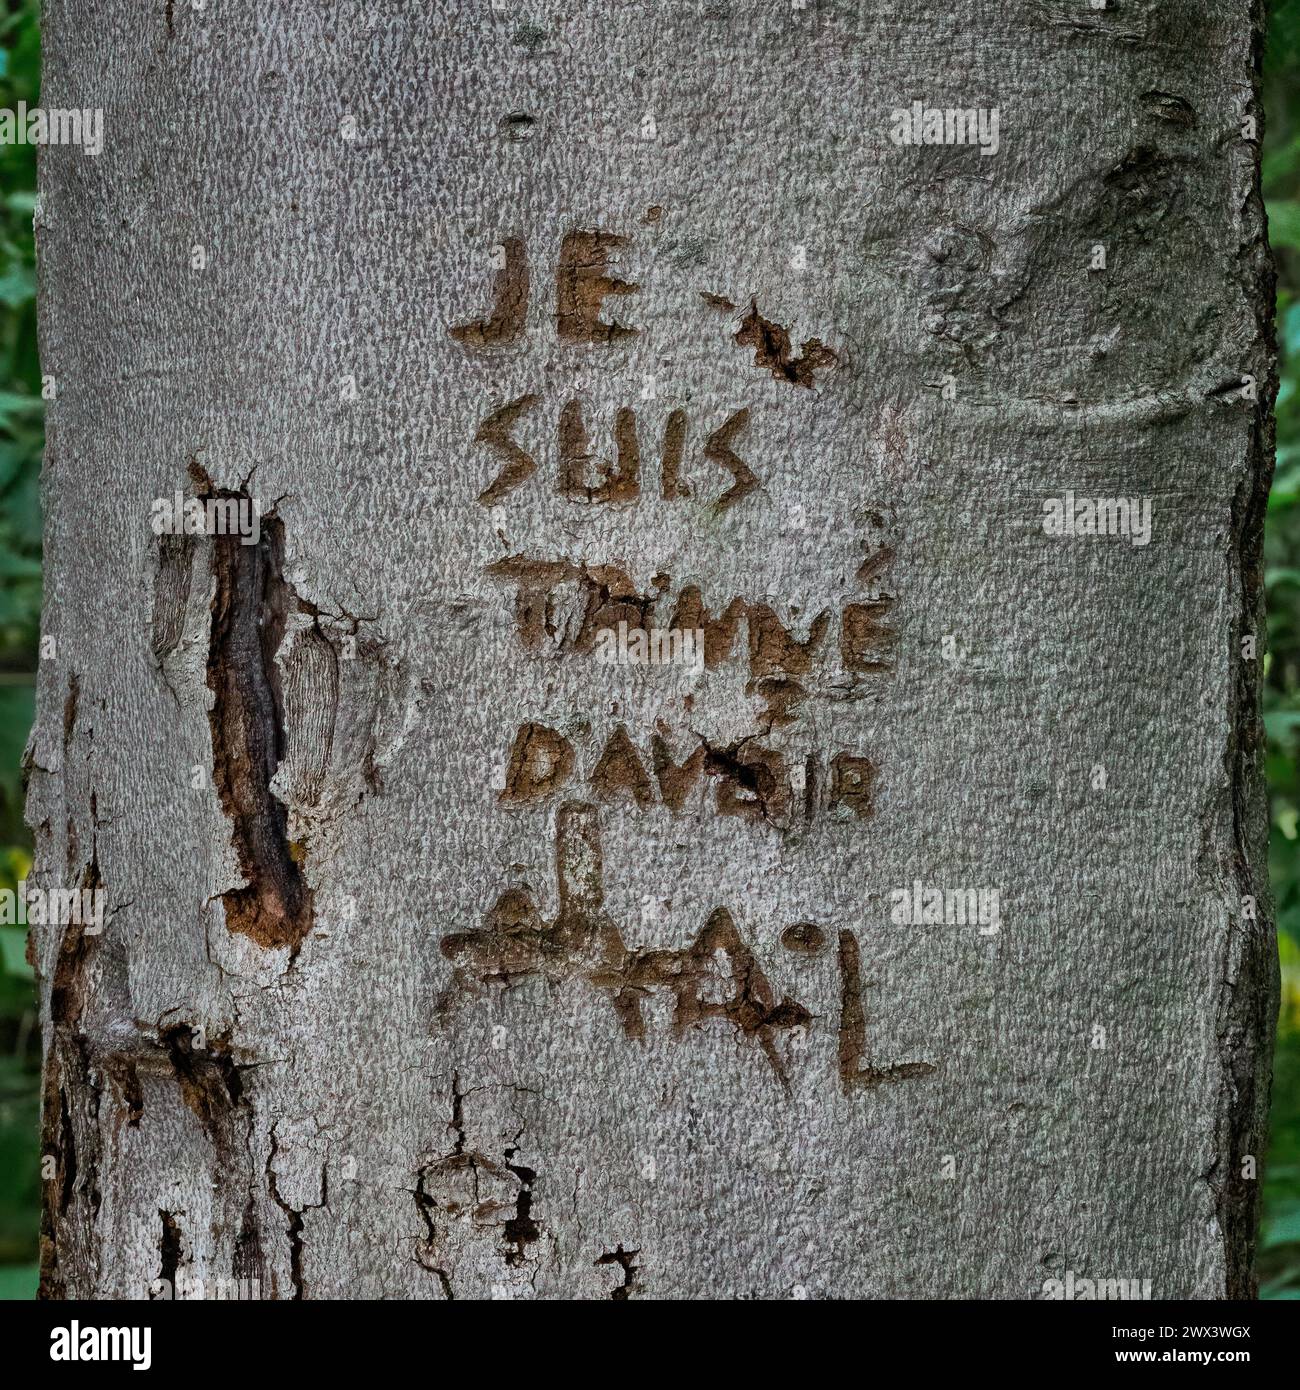 Rinde eines Baumes mit geschnitzter Seelenschmerzen-Inschrift in französischer Sprache Stockfoto